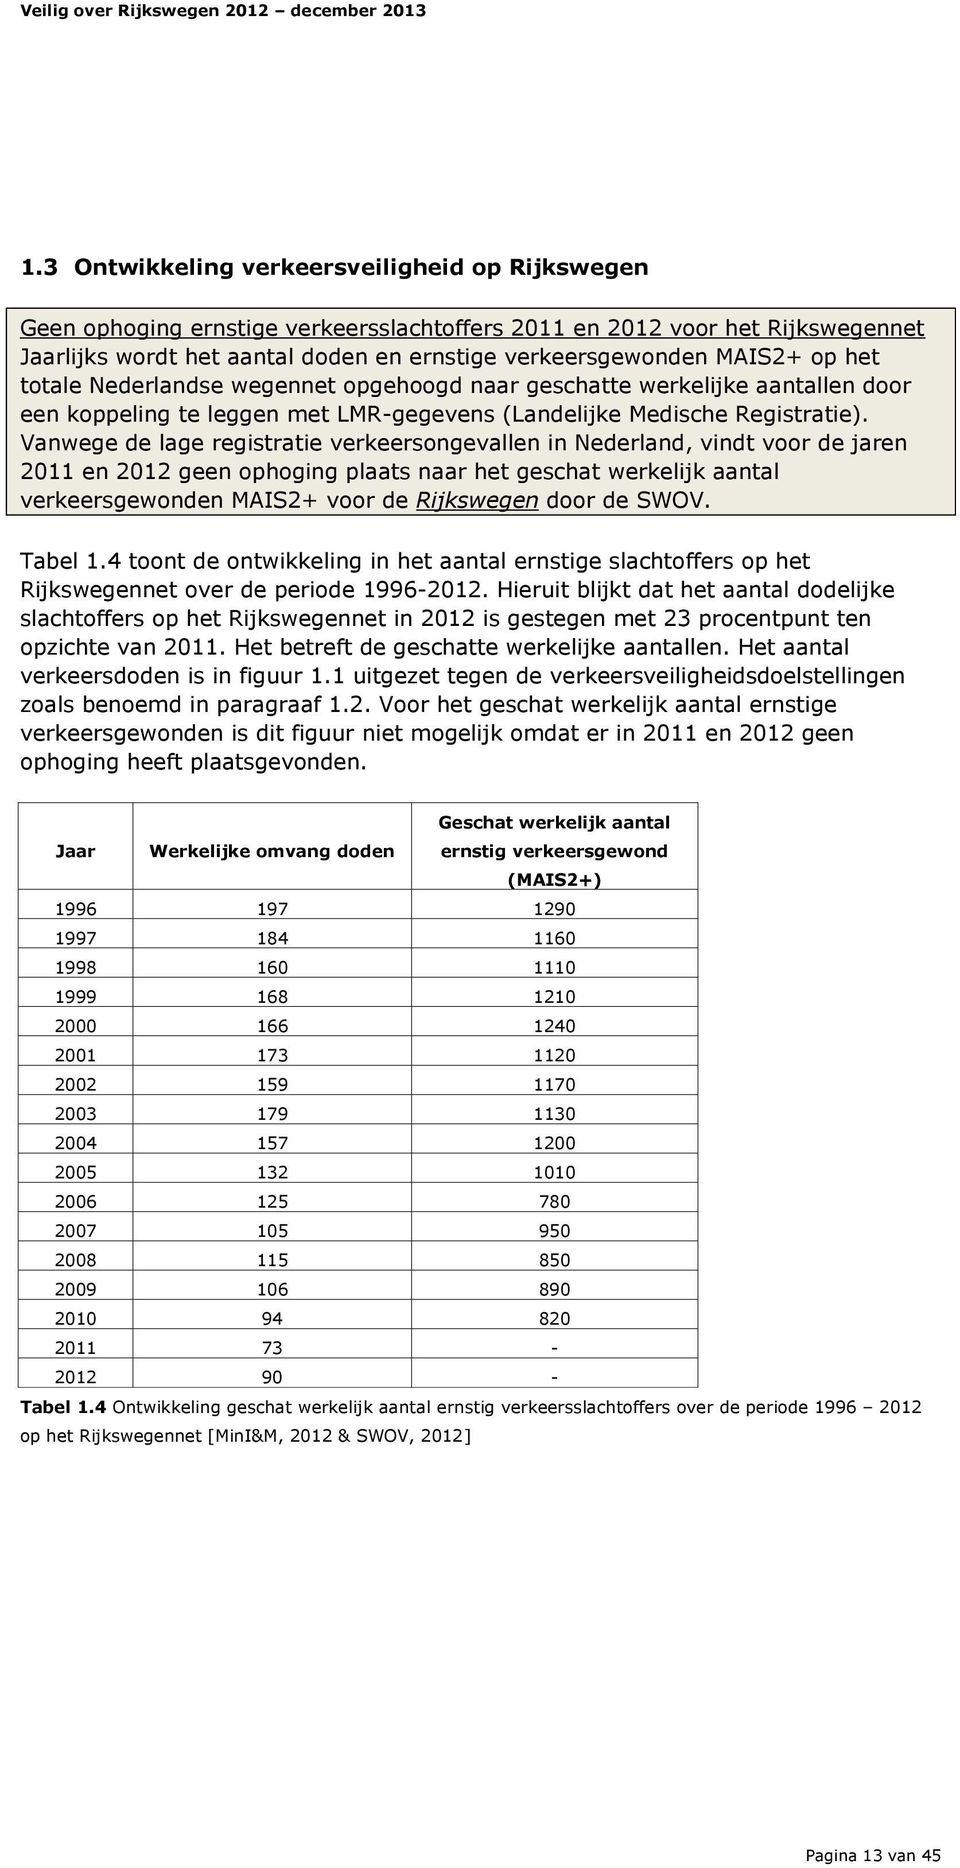 Vanwege de lage registratie verkeersongevallen in Nederland, vindt voor de jaren 2011 en 2012 geen ophoging plaats naar het geschat werkelijk aantal verkeersgewonden MAIS2+ voor de Rijkswegen door de